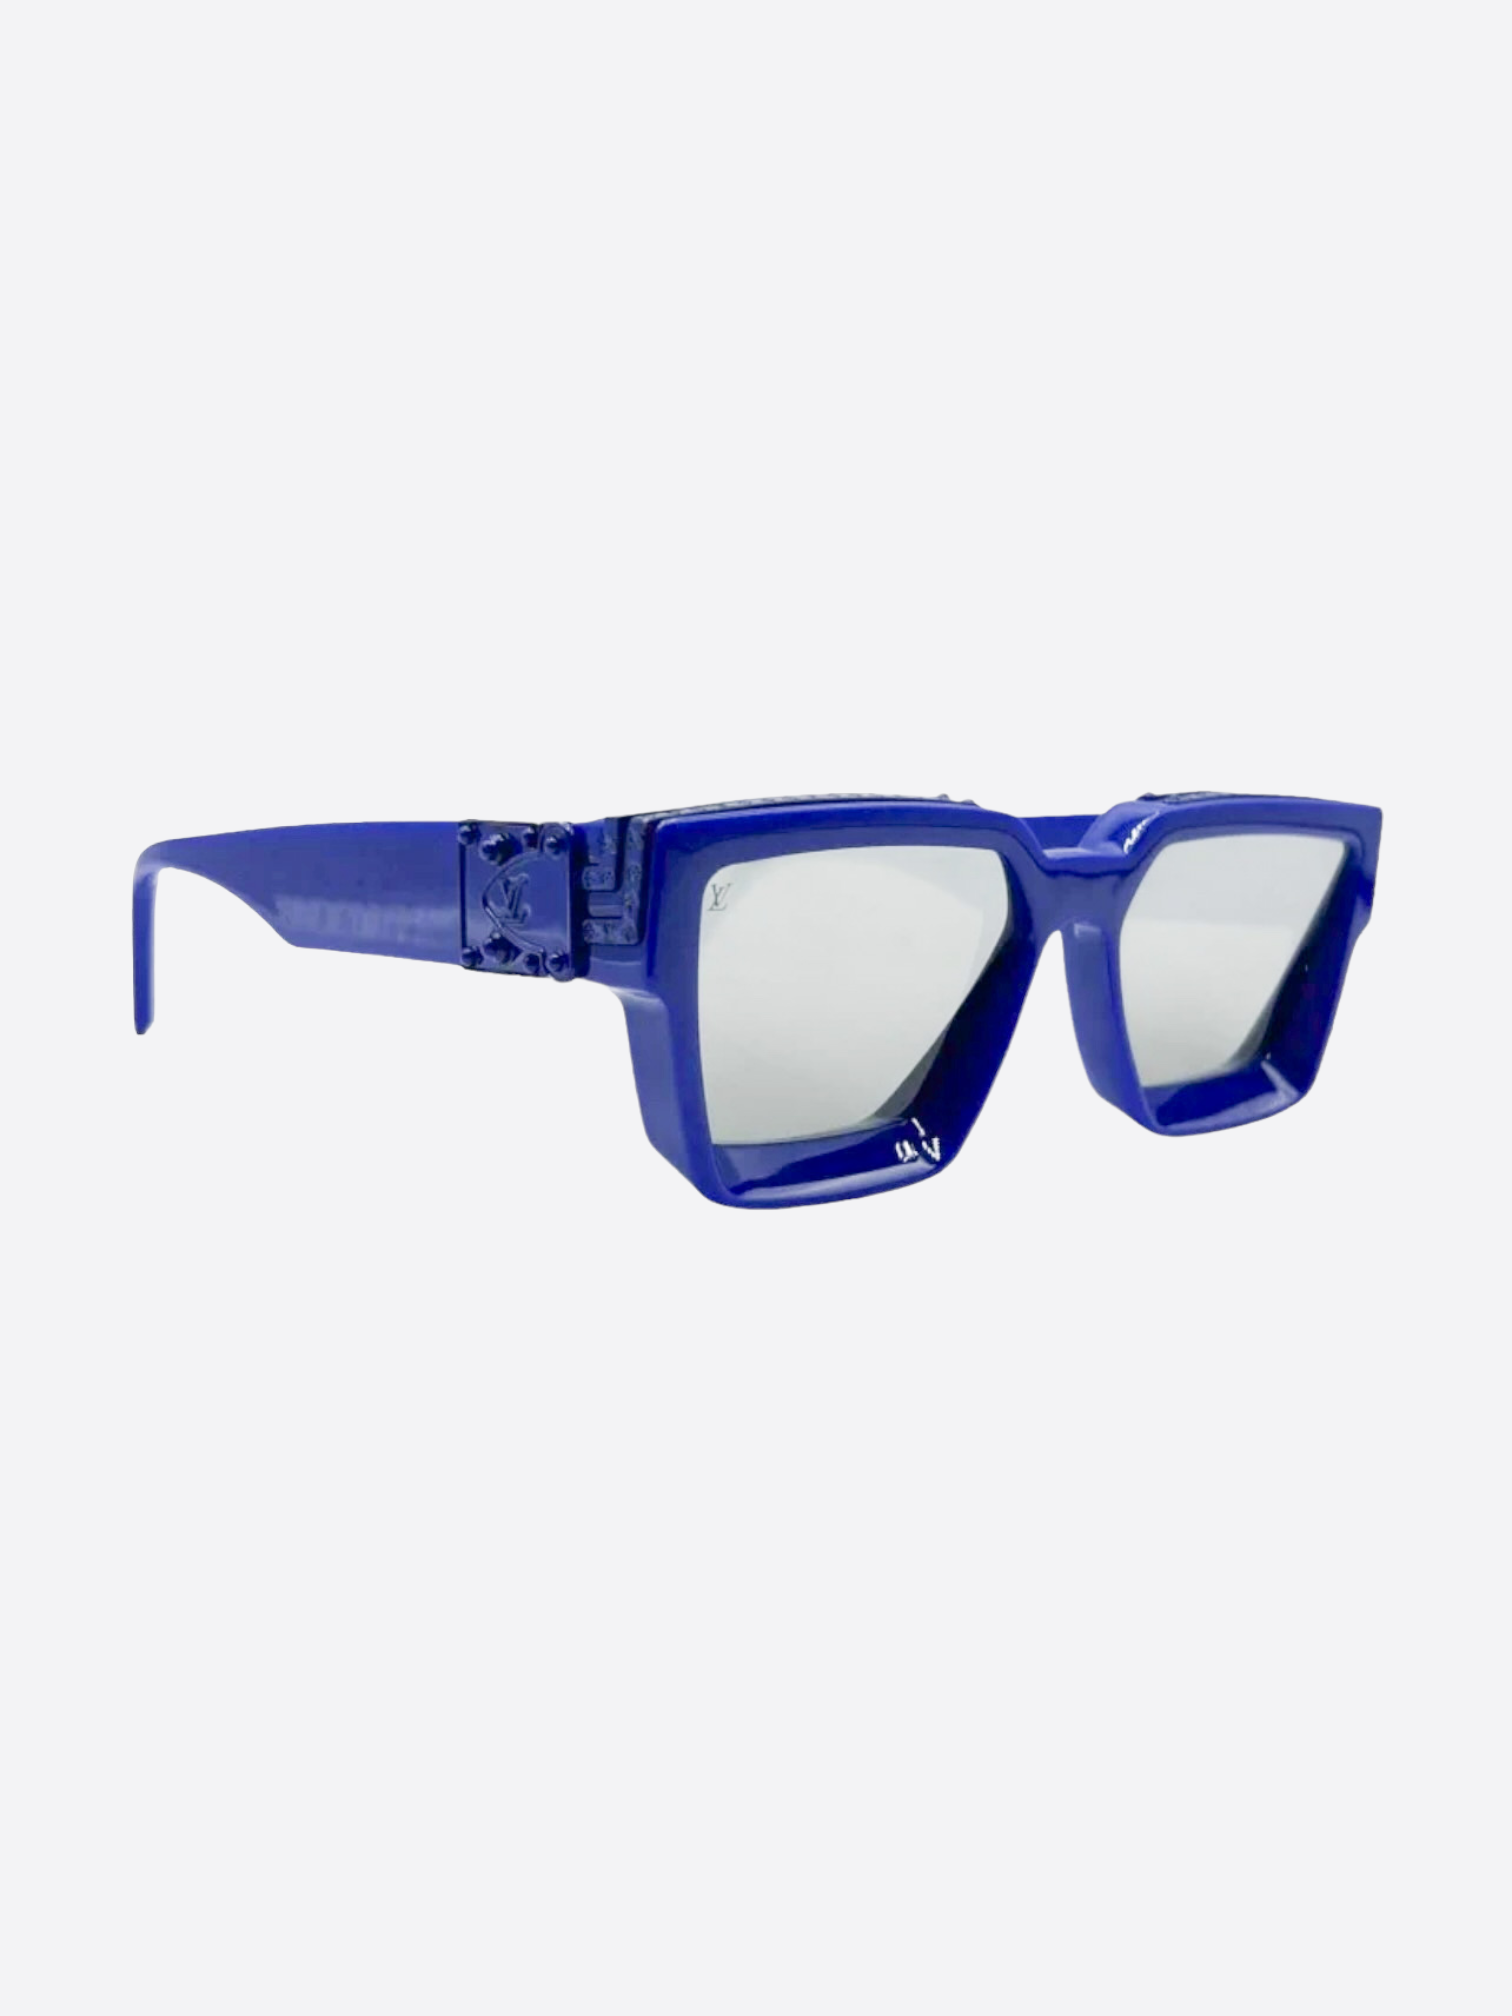 Louis Vuitton Millionaire Sunglasses Blue - For Sale on 1stDibs  blue lv  sunglasses, louis vuitton glasses serial number, millionaire bag louis  vuitton